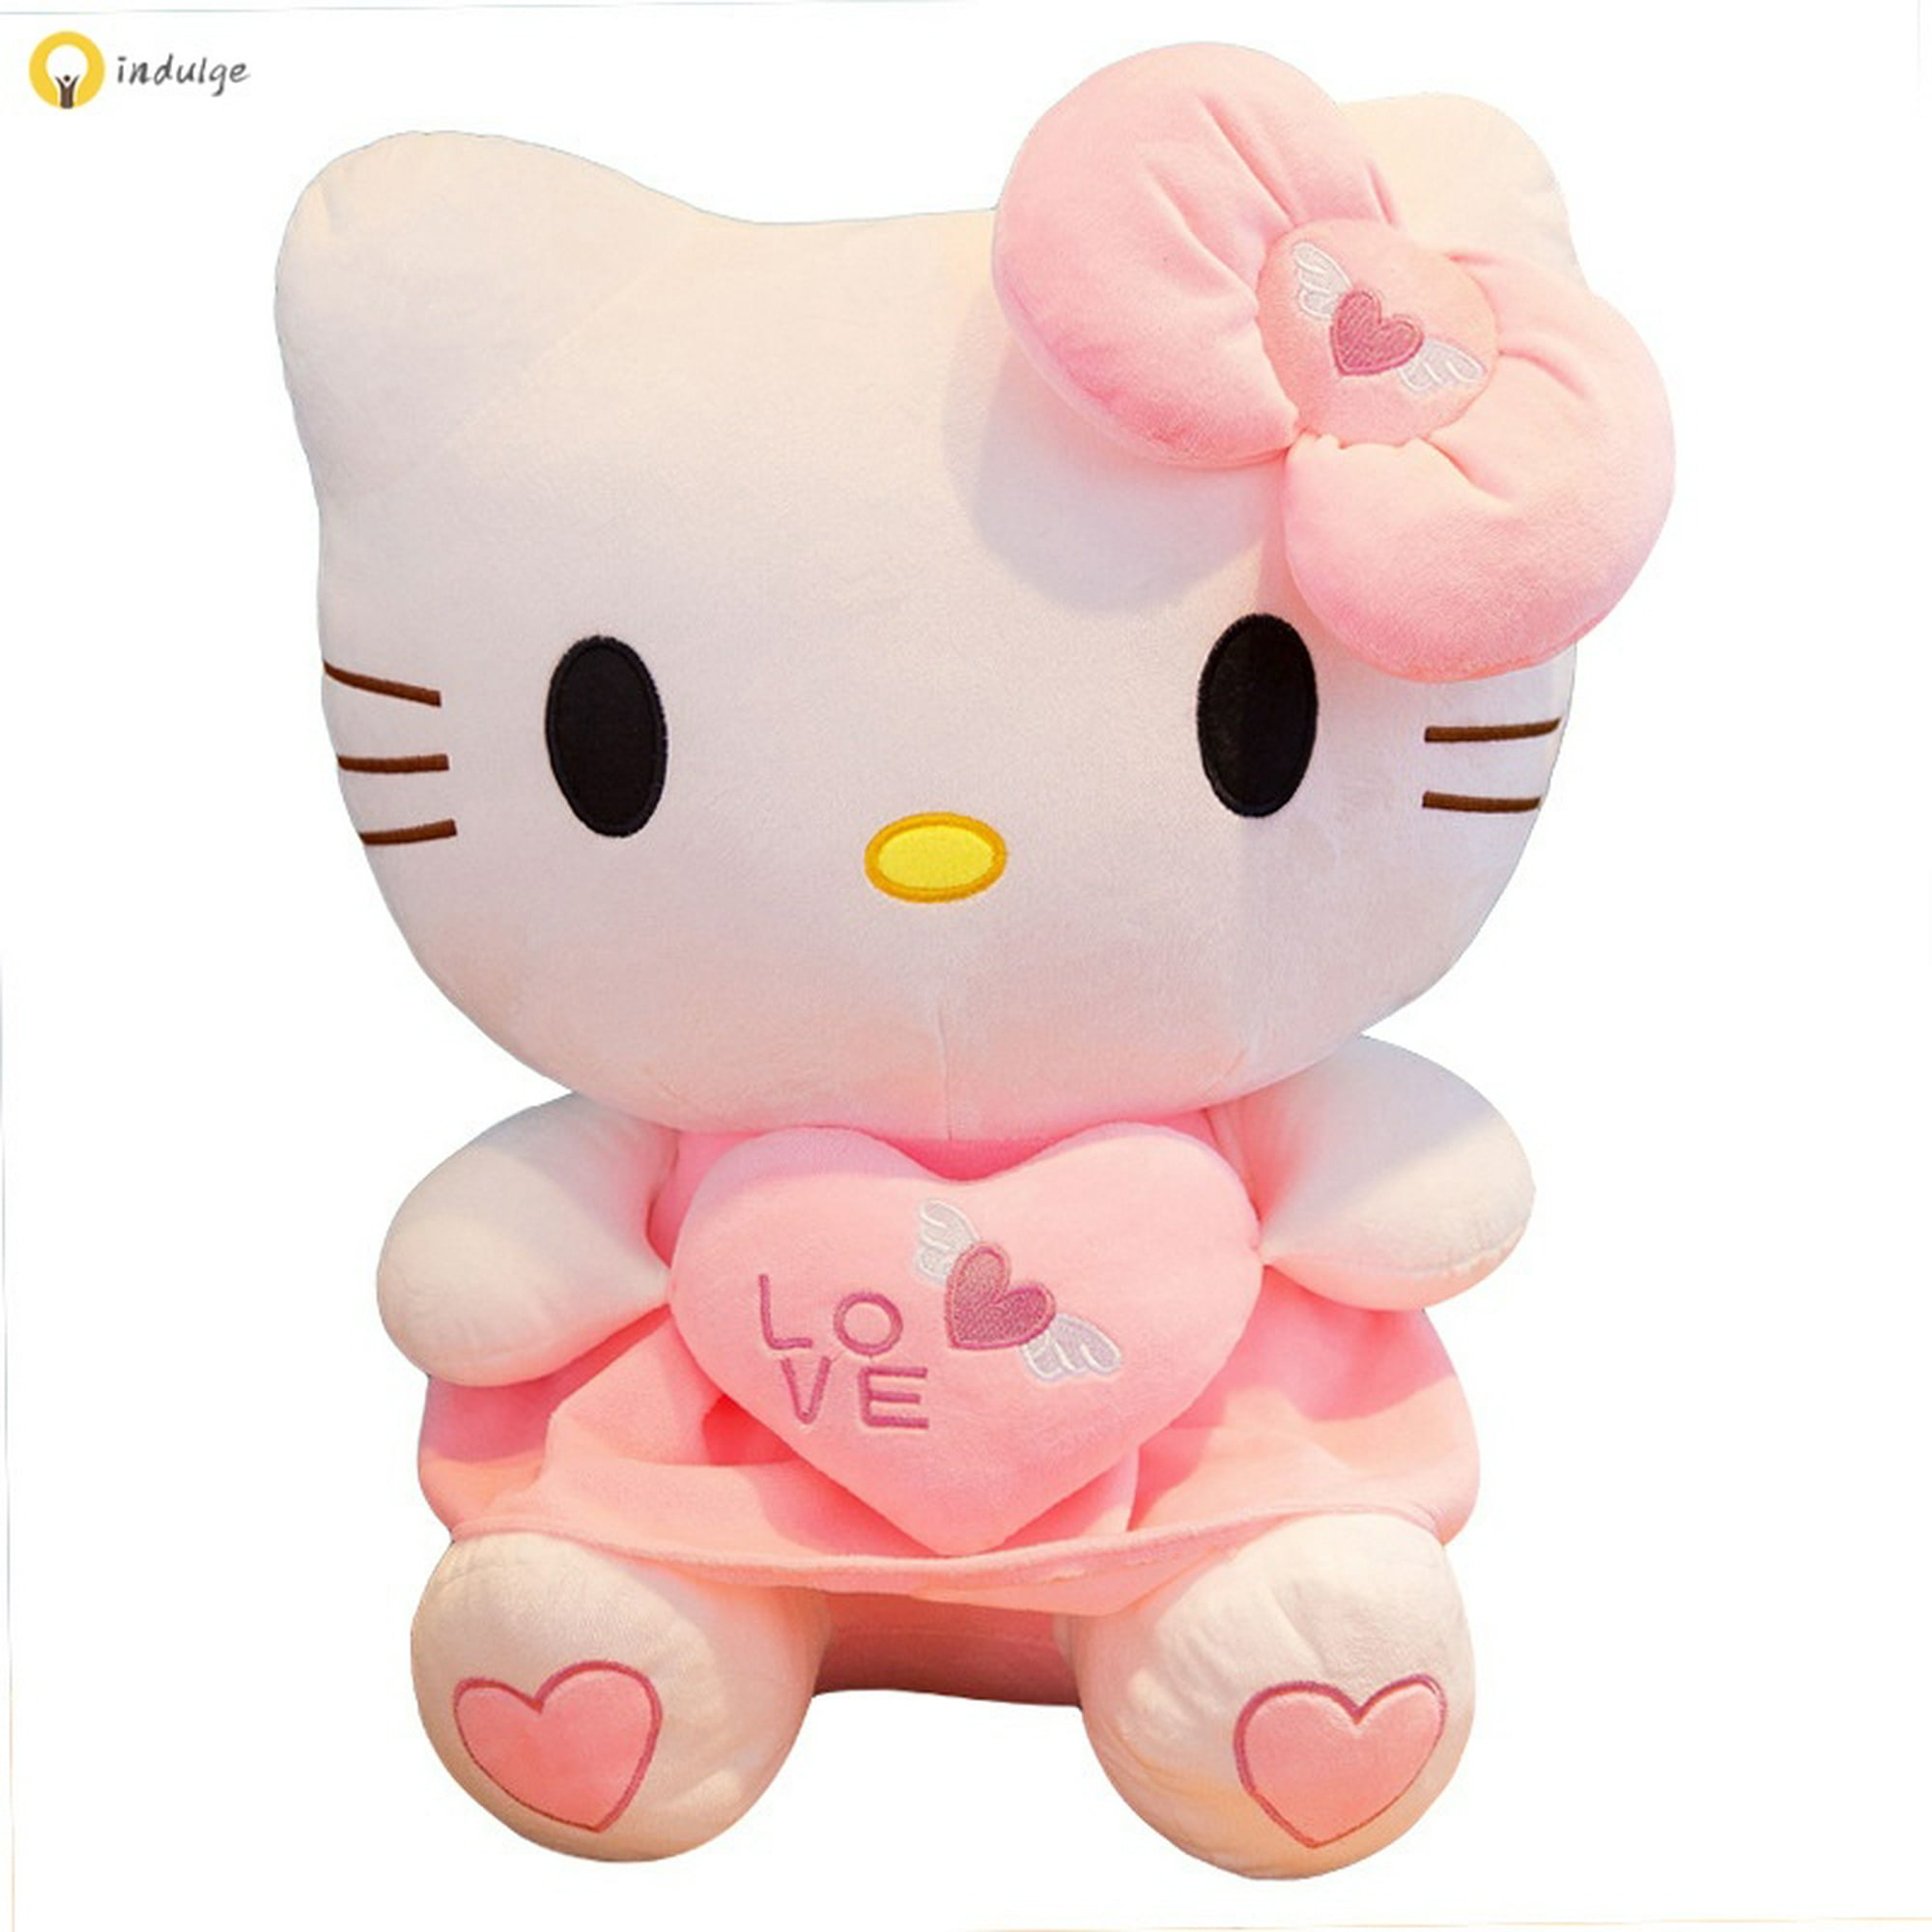 Nuevo Peluche Hello Kitty de 39 cm